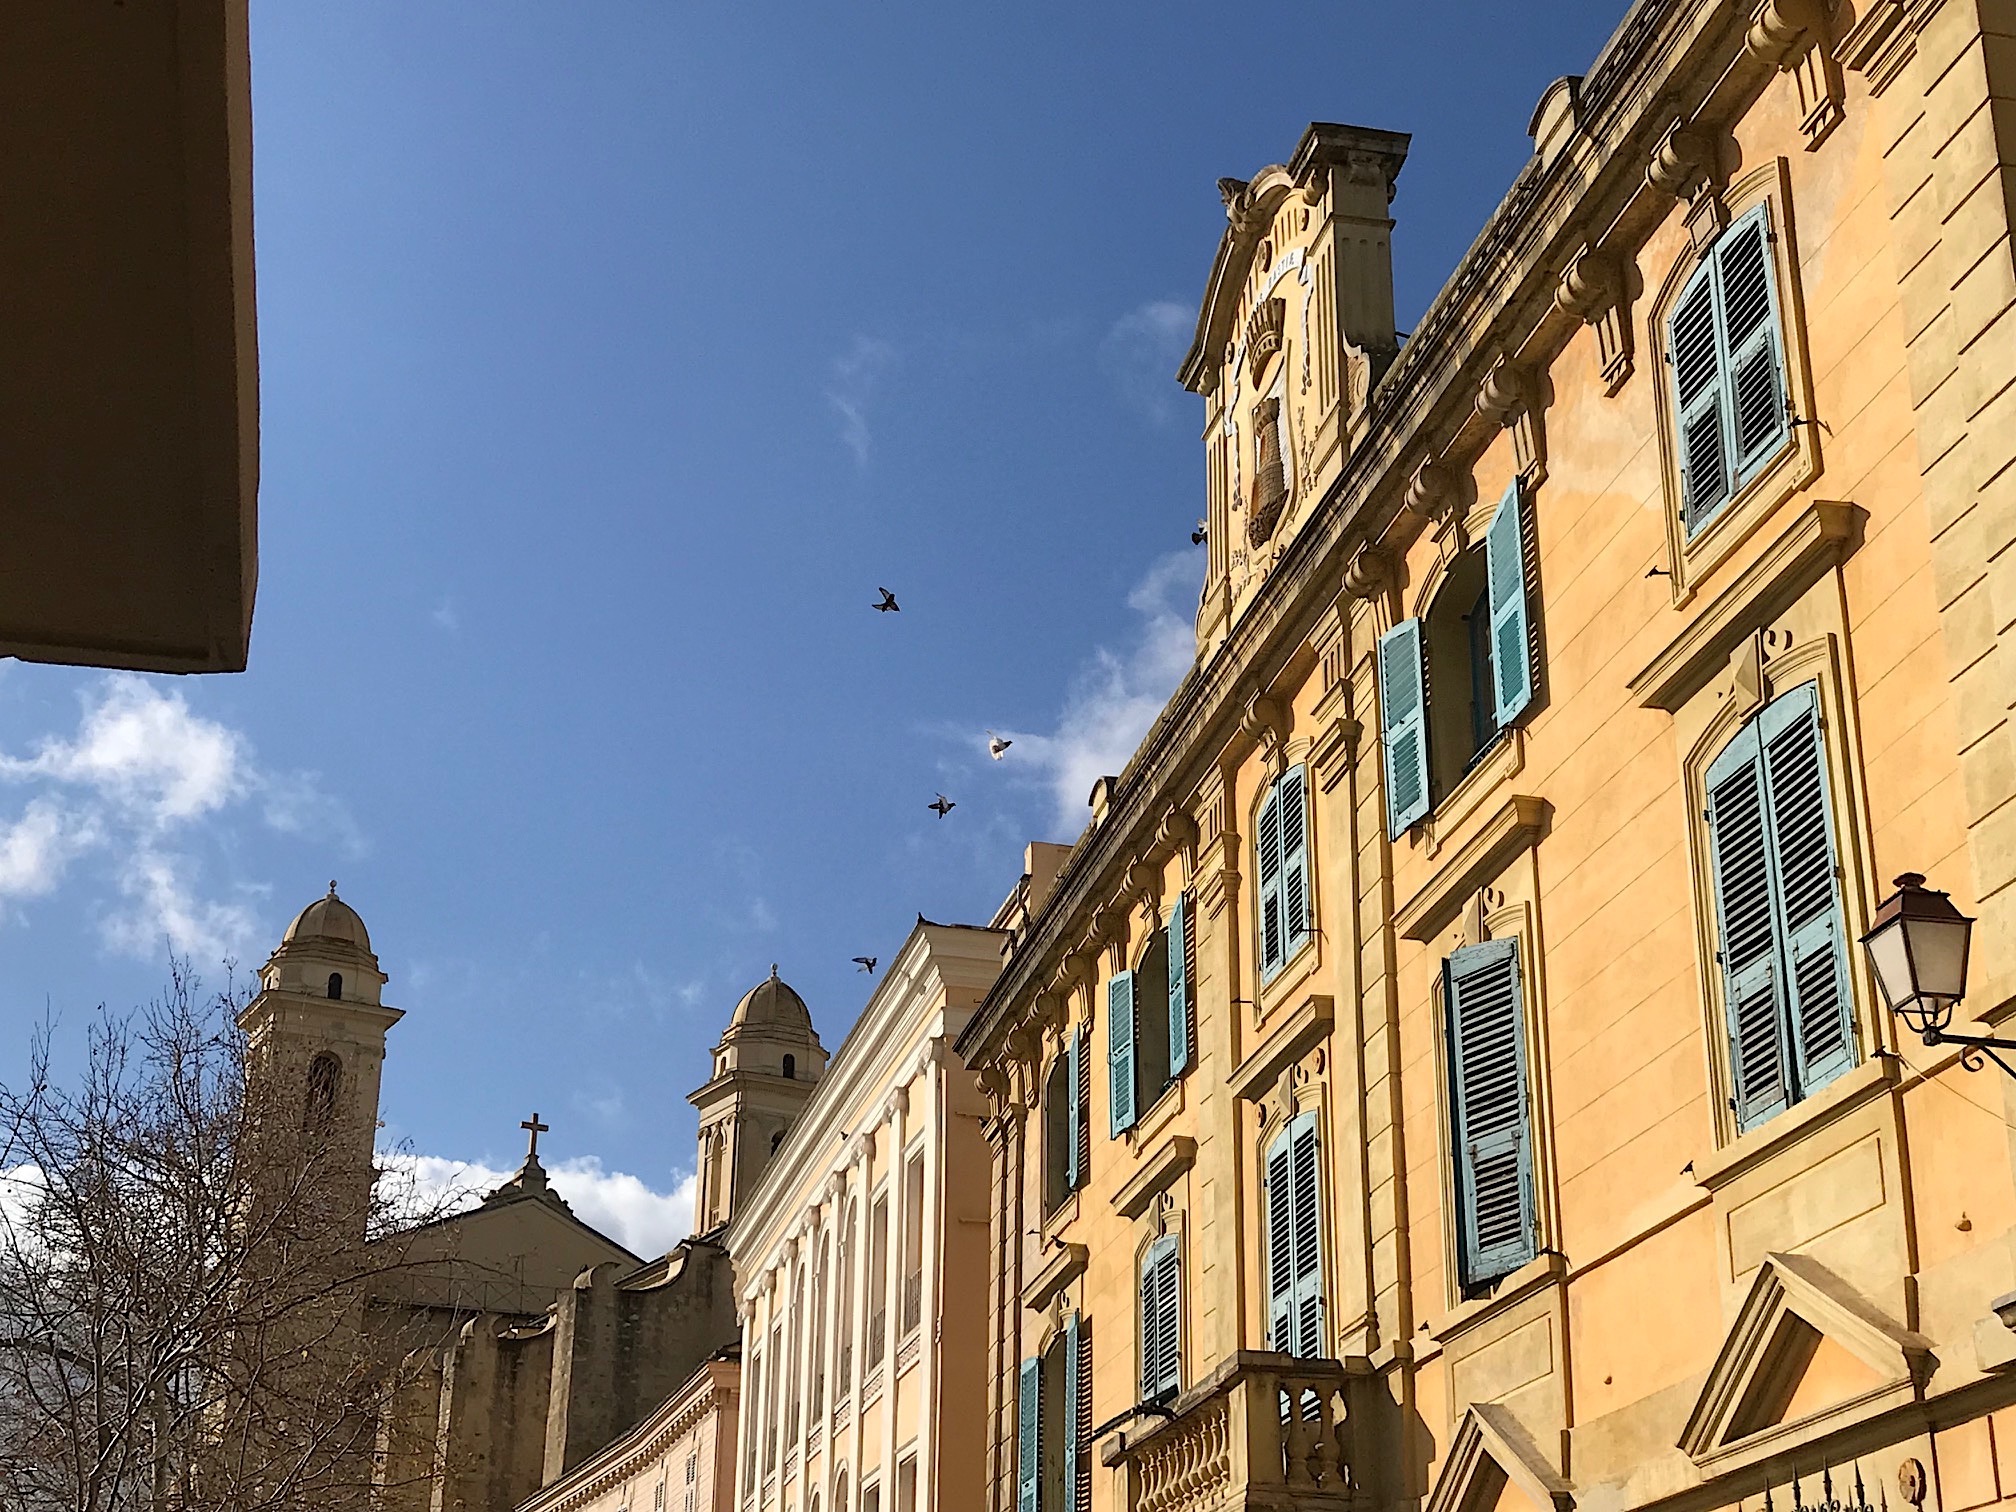 L'image du jour : Le fronton de l'hôtel de ville de Bastia et San Ghjuvà